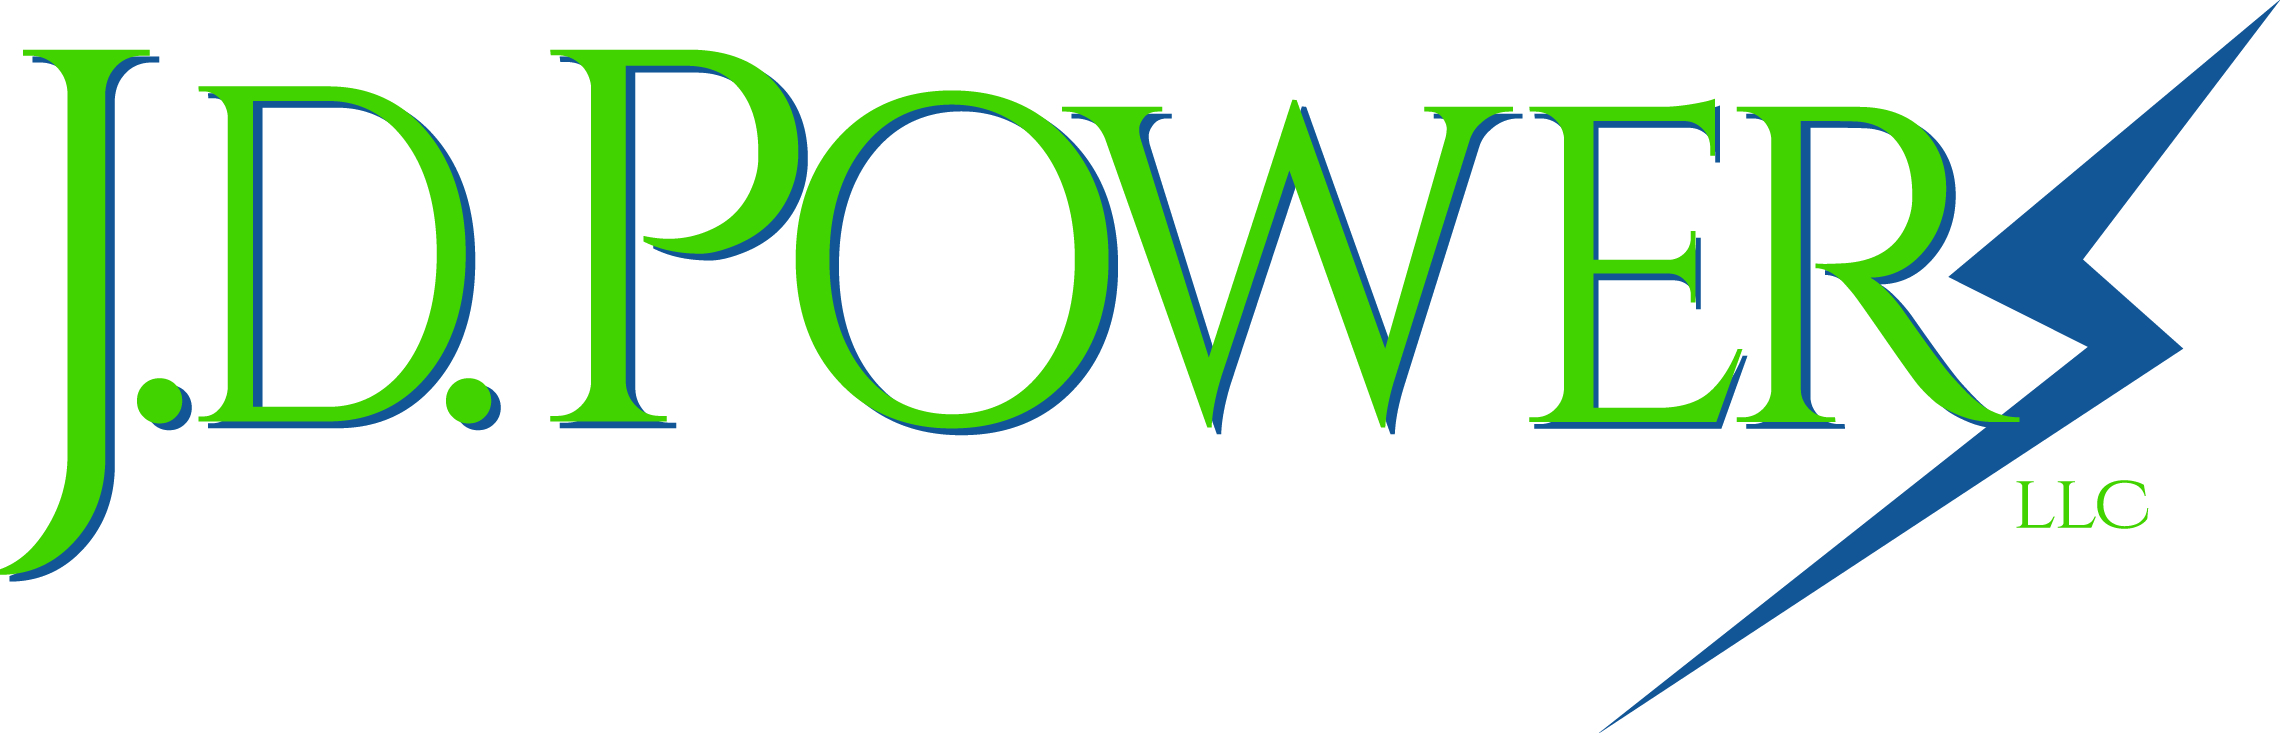 J D Powers LLC